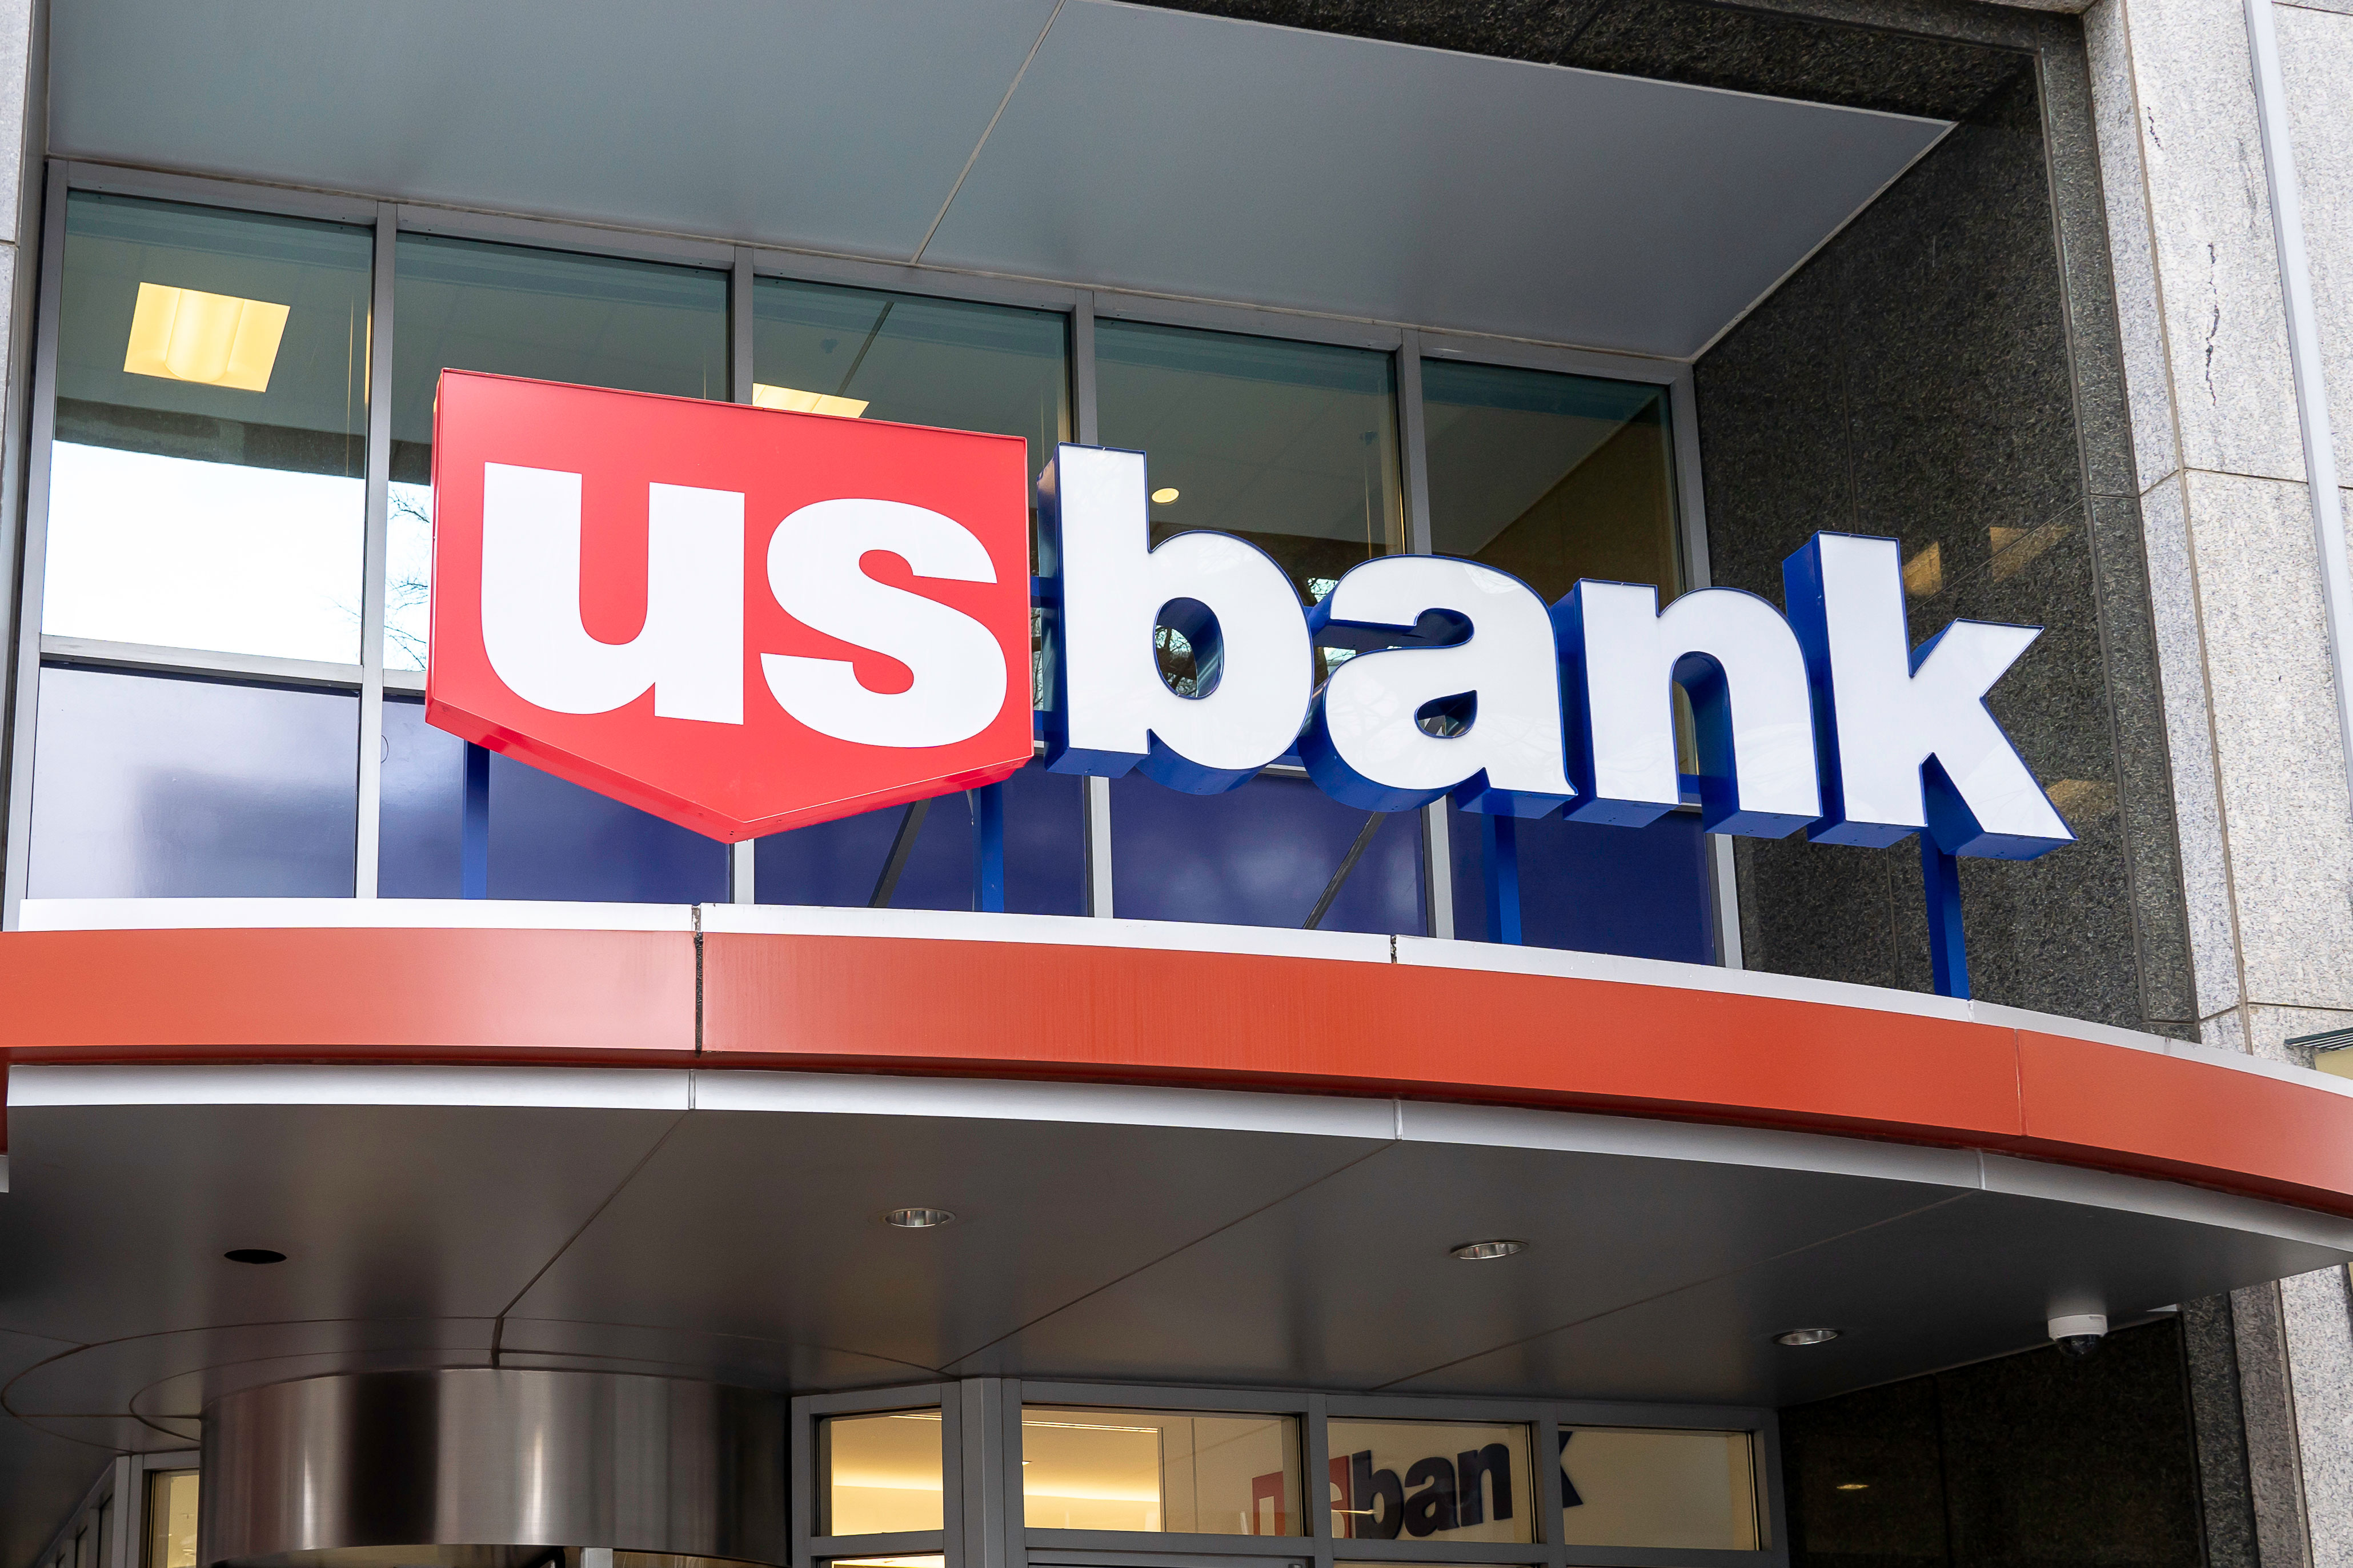 P s bank. Us Bank. U.S. Bancorp. We Bank. U.S. Bank n.a..